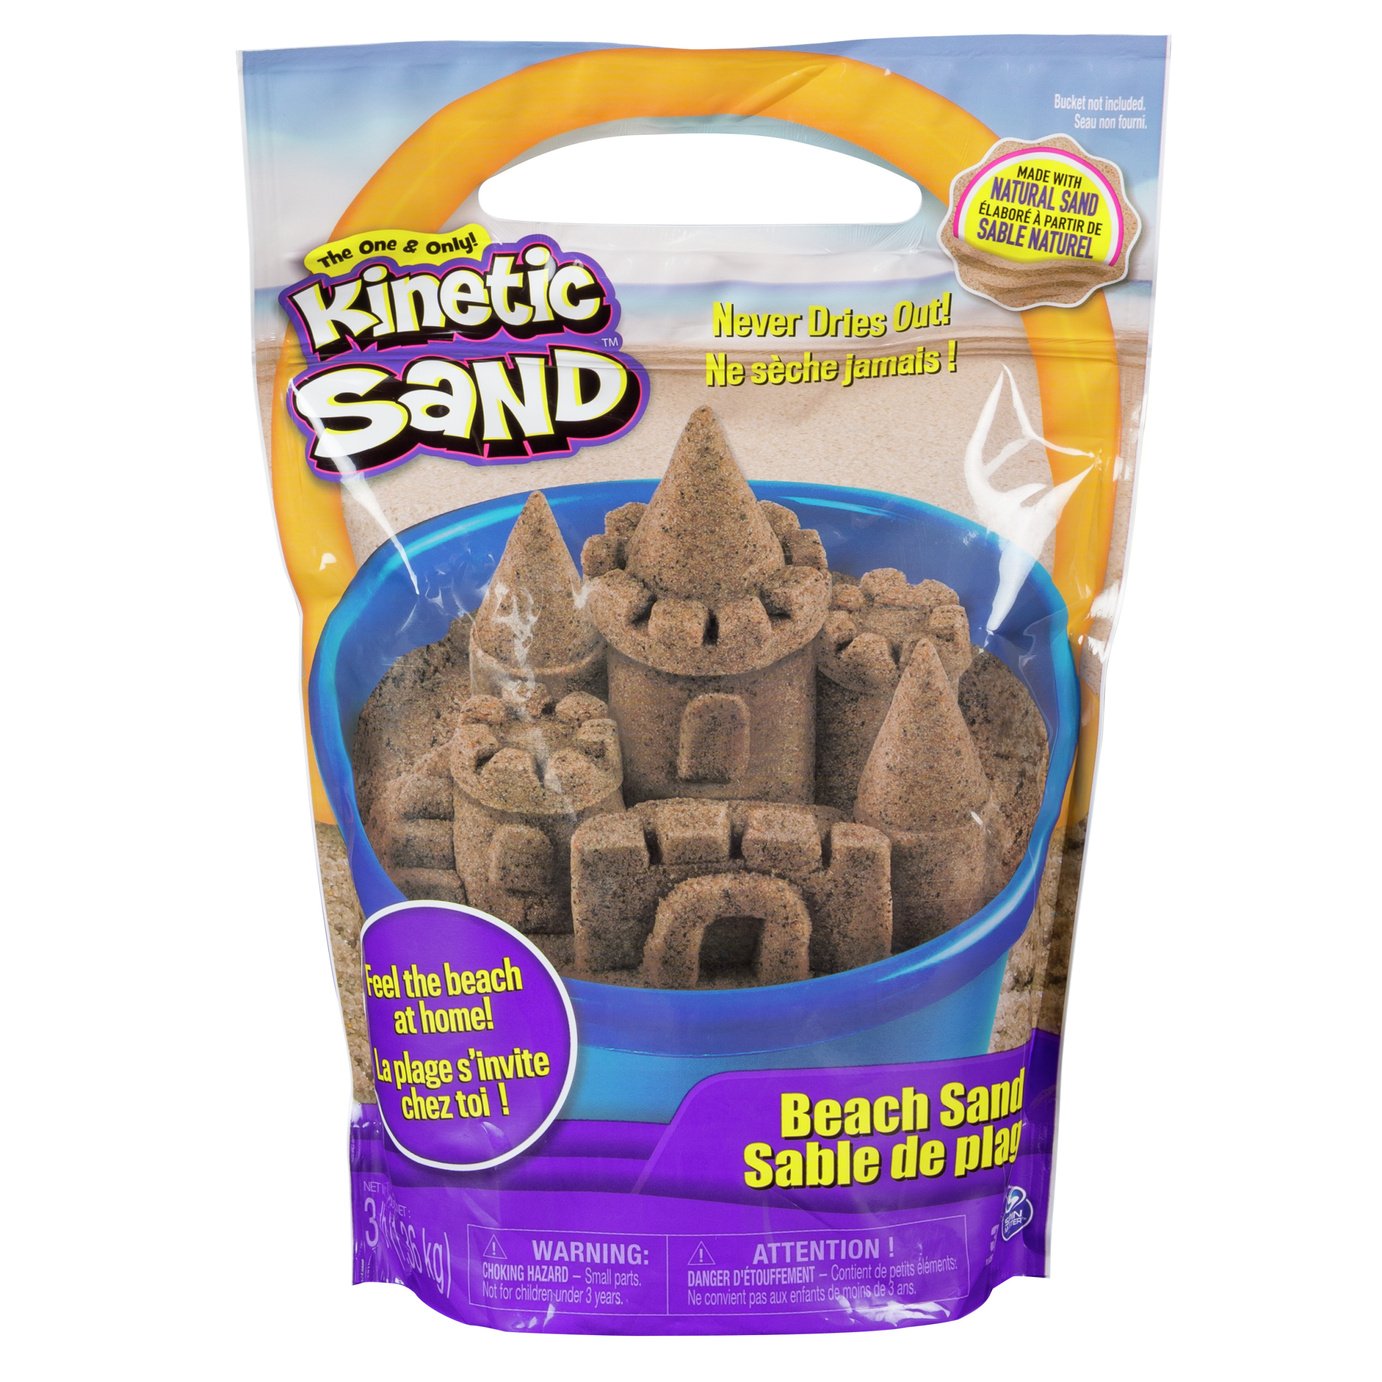 buy kinetic sand